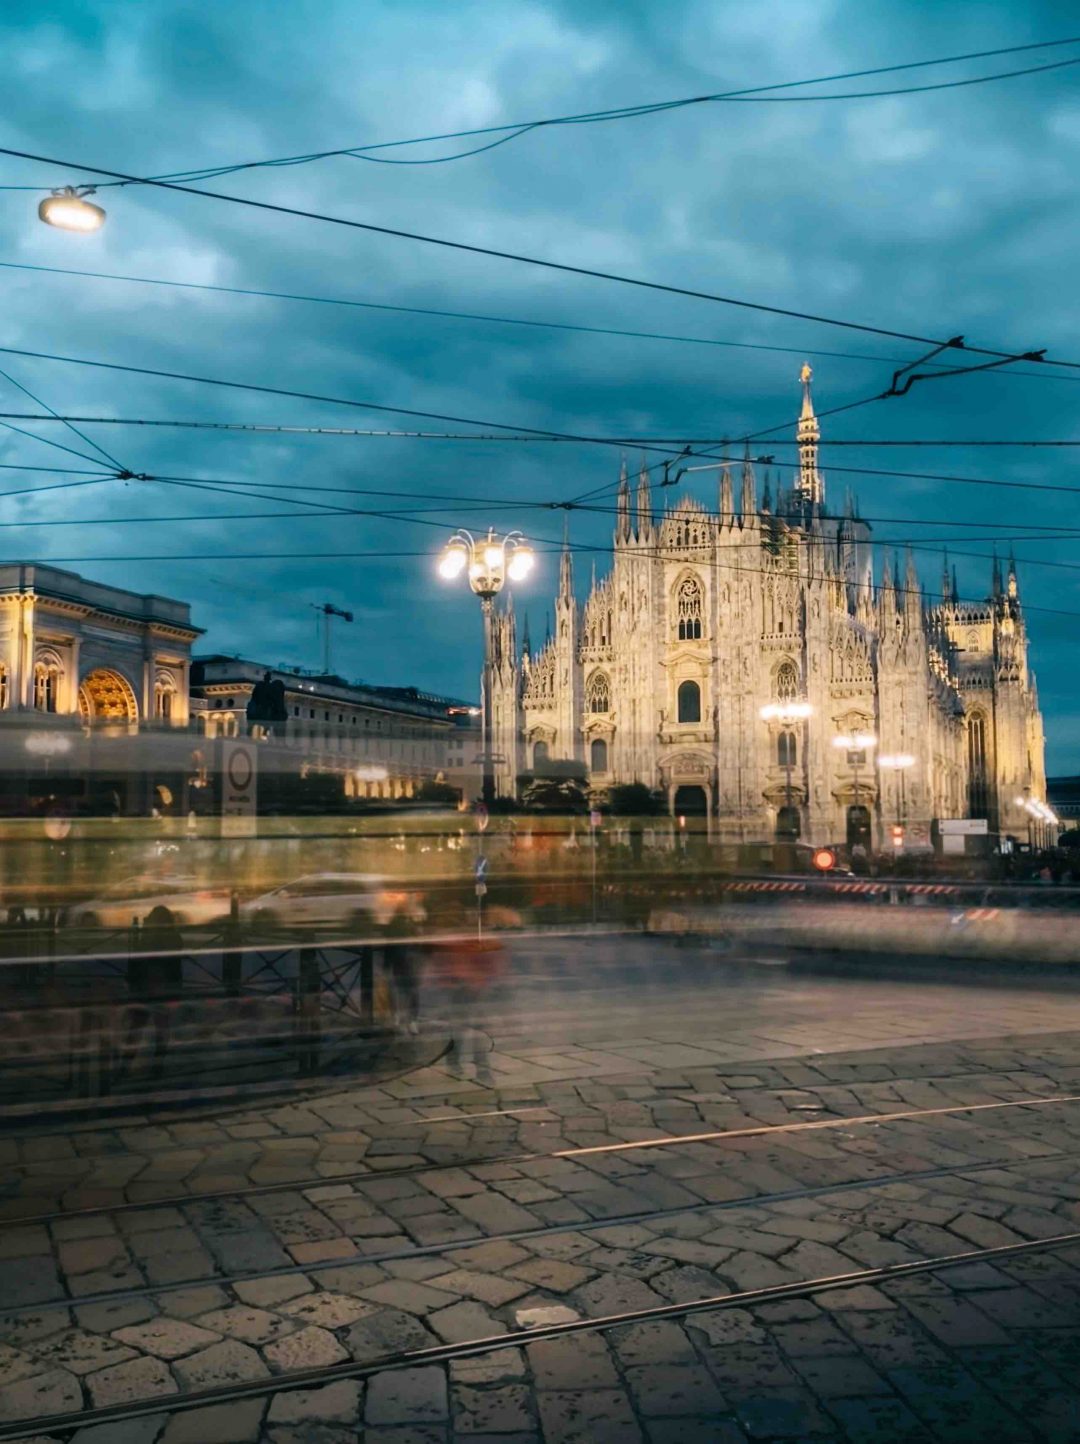 Piazza del Duomo, Milano - Lunga esposizione a portata di click